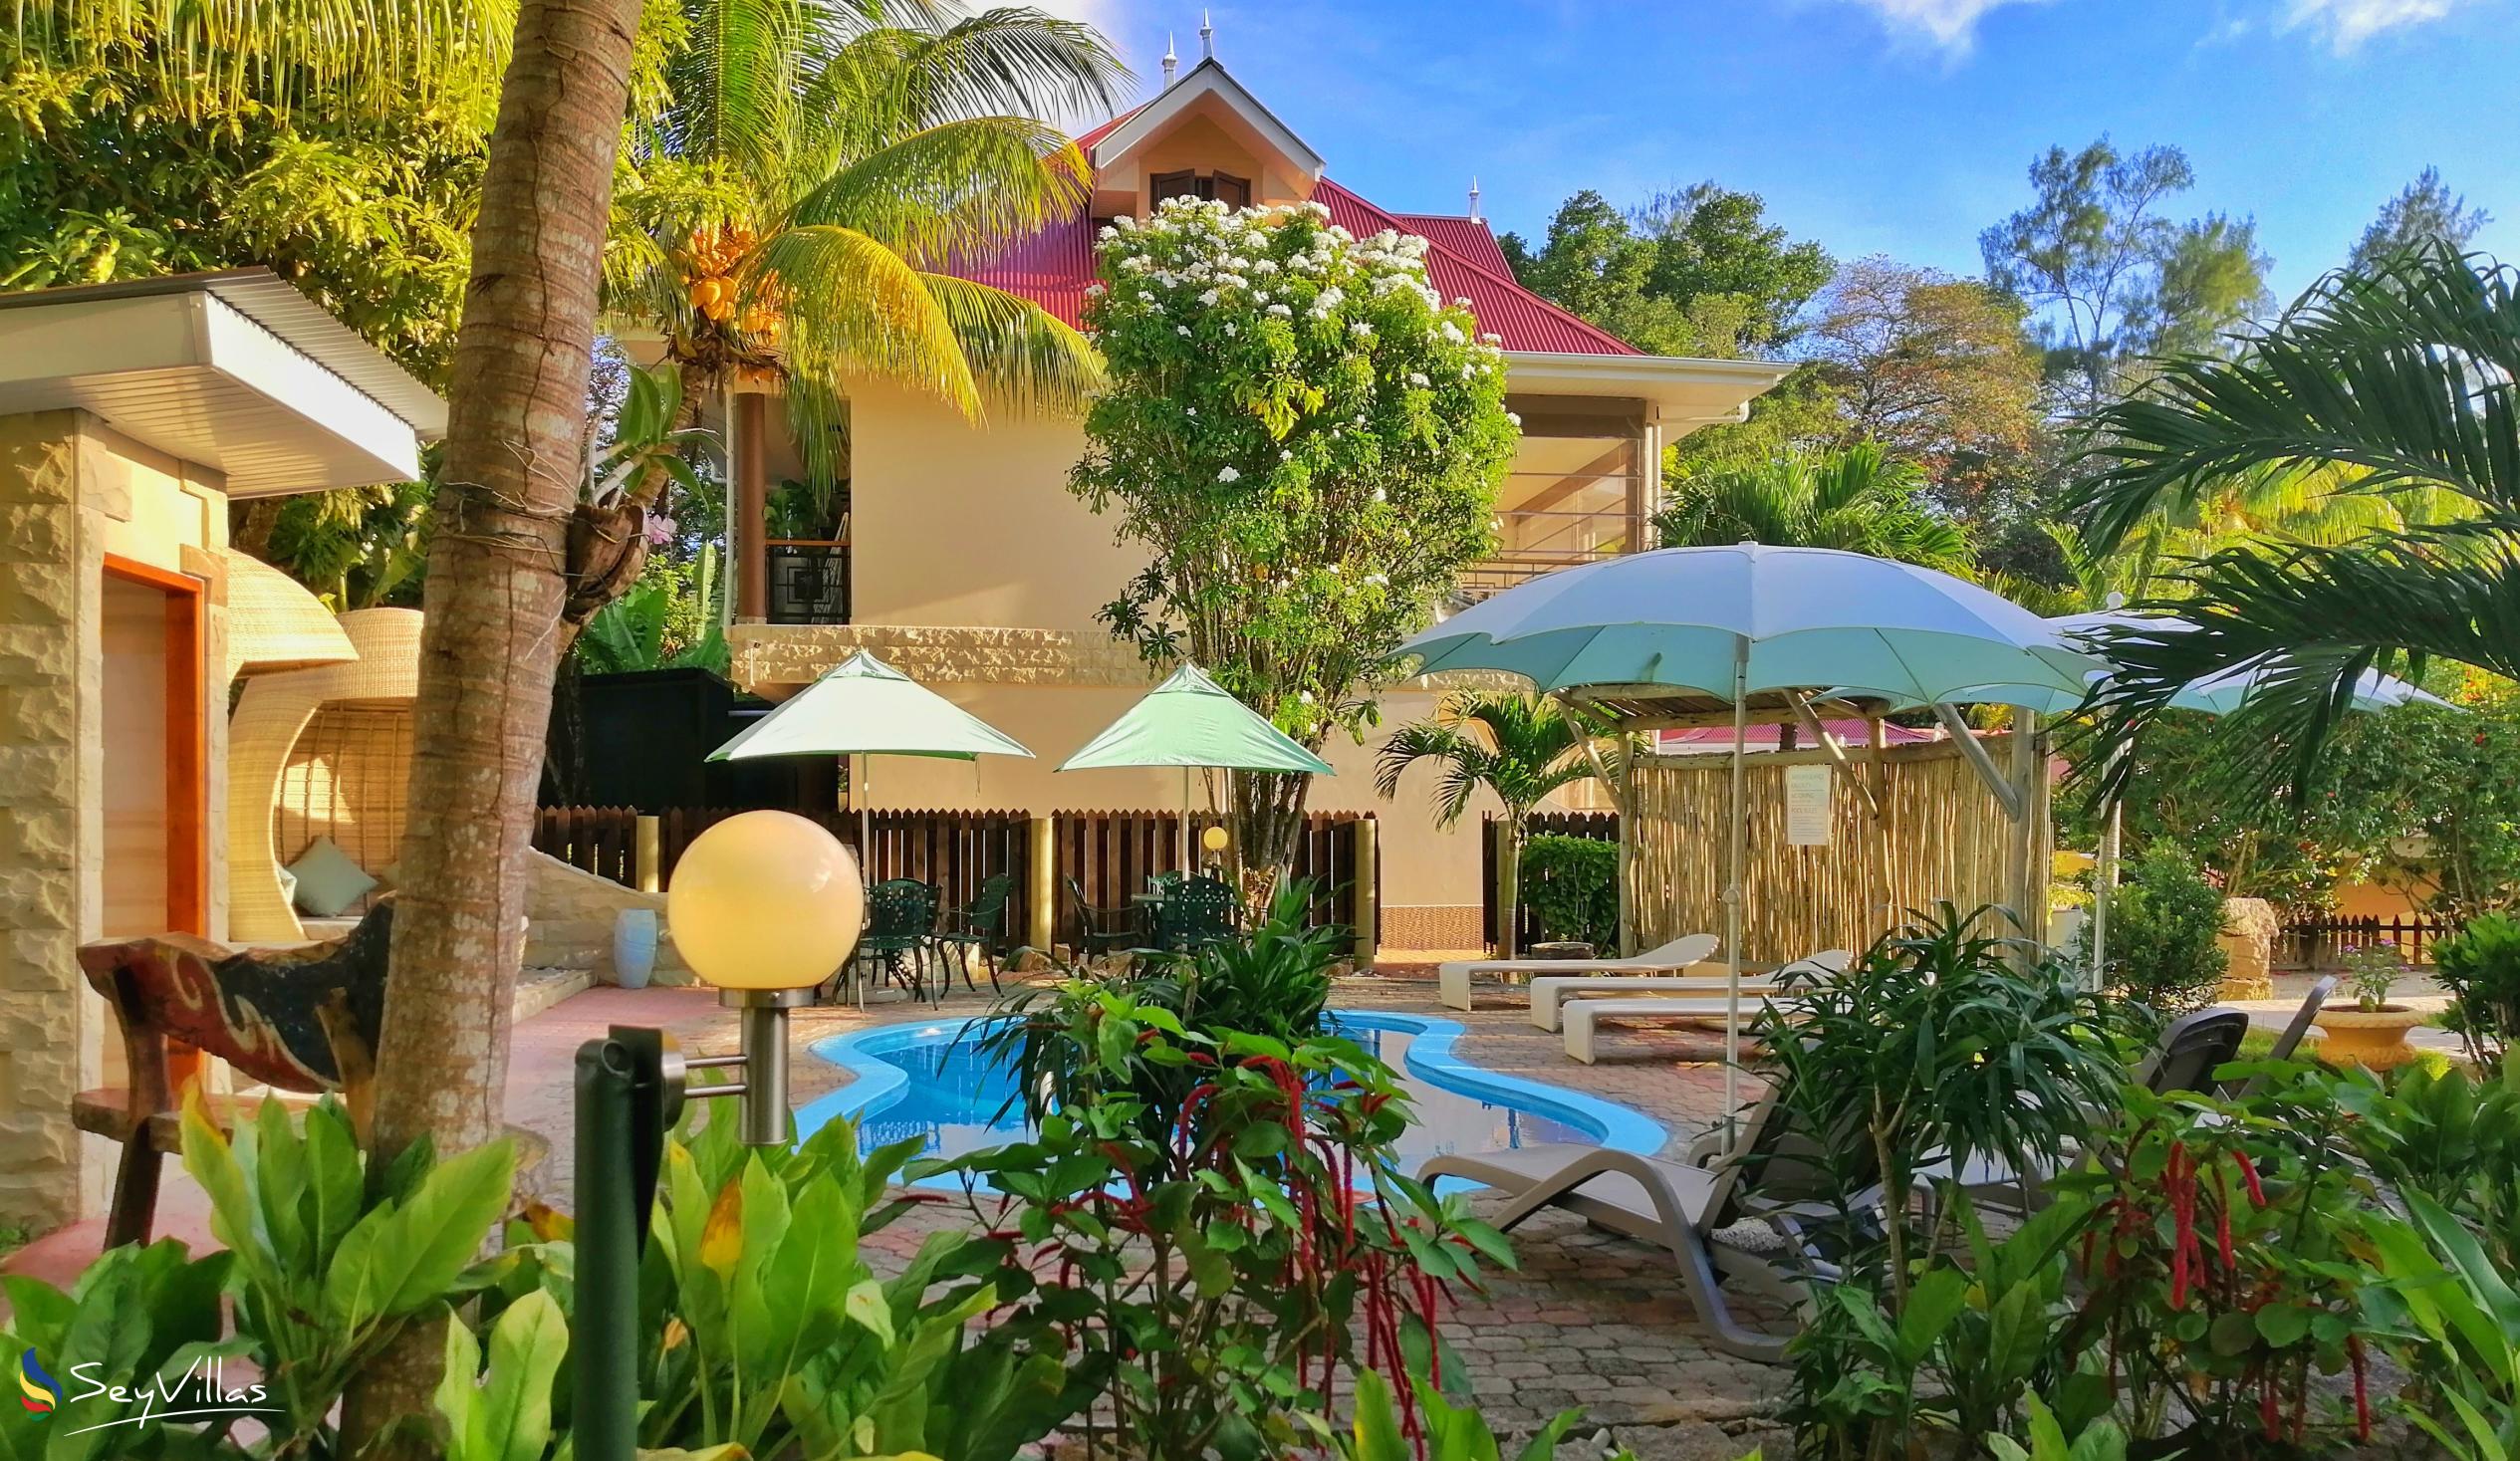 Photo 161: Casa de Leela - Outdoor area - La Digue (Seychelles)